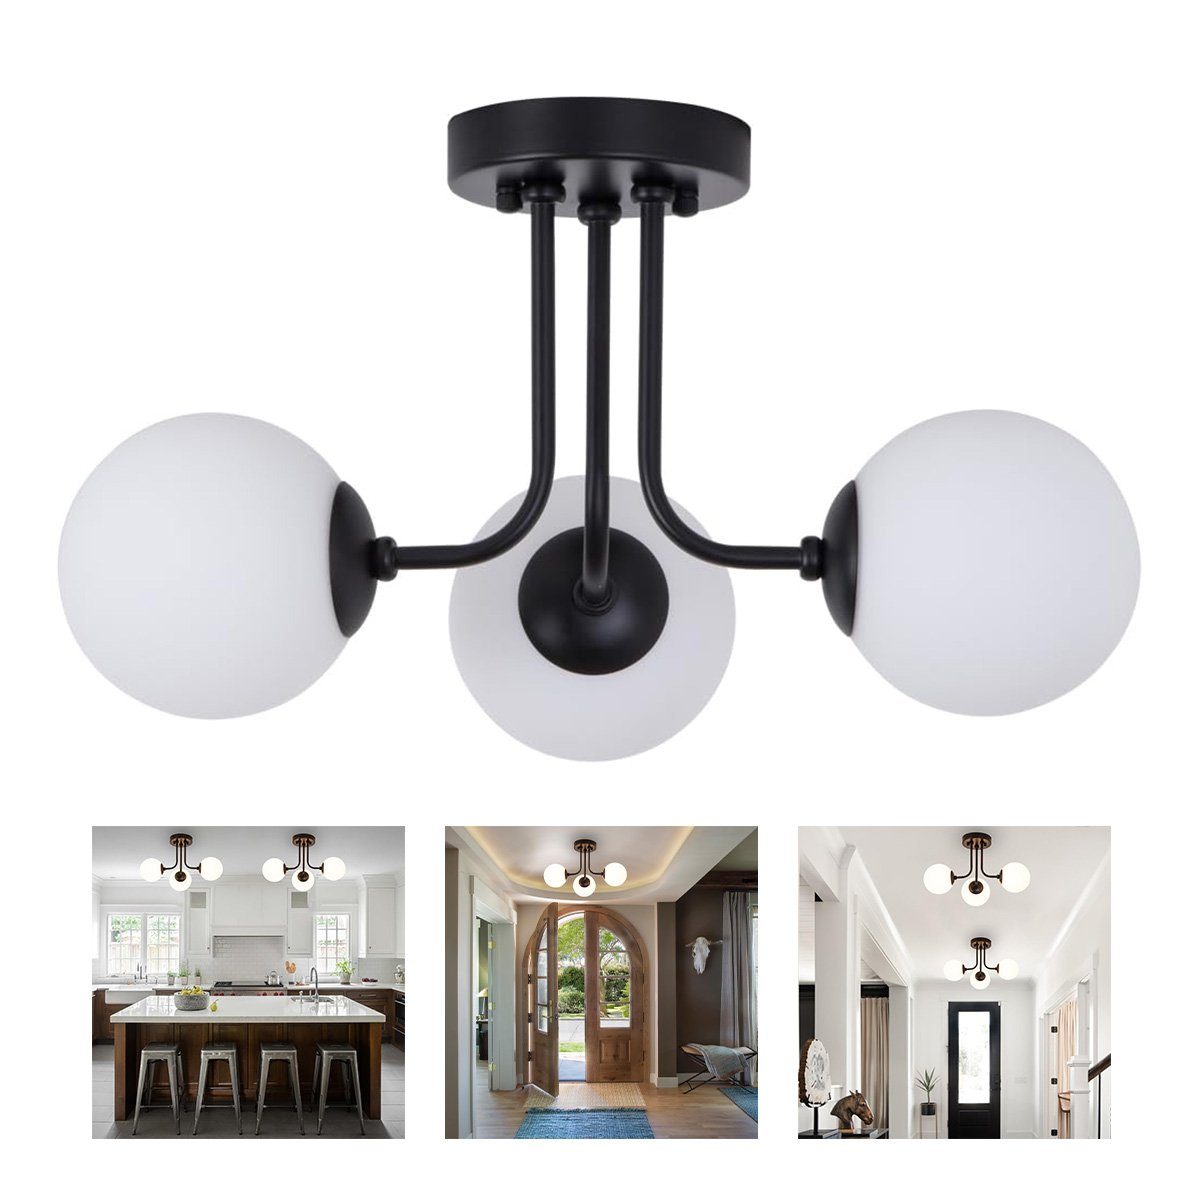 Welikera Deckenleuchte 3-Kopf-Deckenlampe Kugelförmig für 10-15 m² Raum,E27-Lampenfassung Schwarz